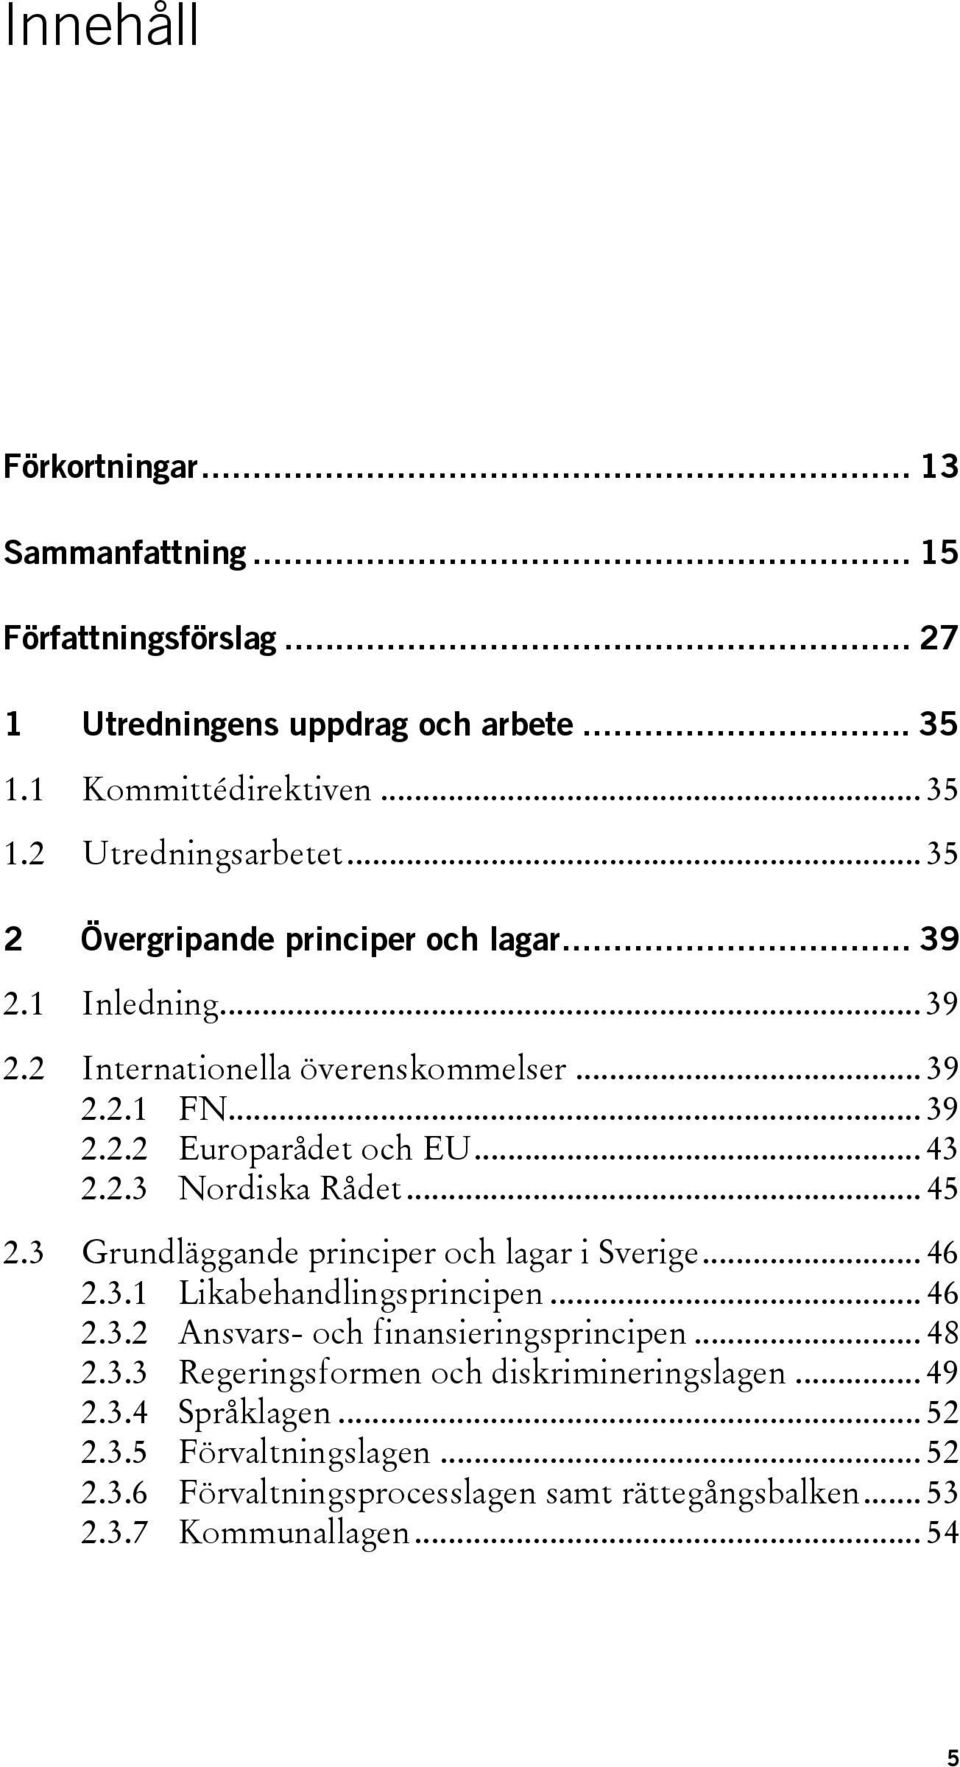 .. 45 2.3 Grundläggande principer och lagar i Sverige... 46 2.3.1 Likabehandlingsprincipen... 46 2.3.2 Ansvars- och finansieringsprincipen... 48 2.3.3 Regeringsformen och diskrimineringslagen.